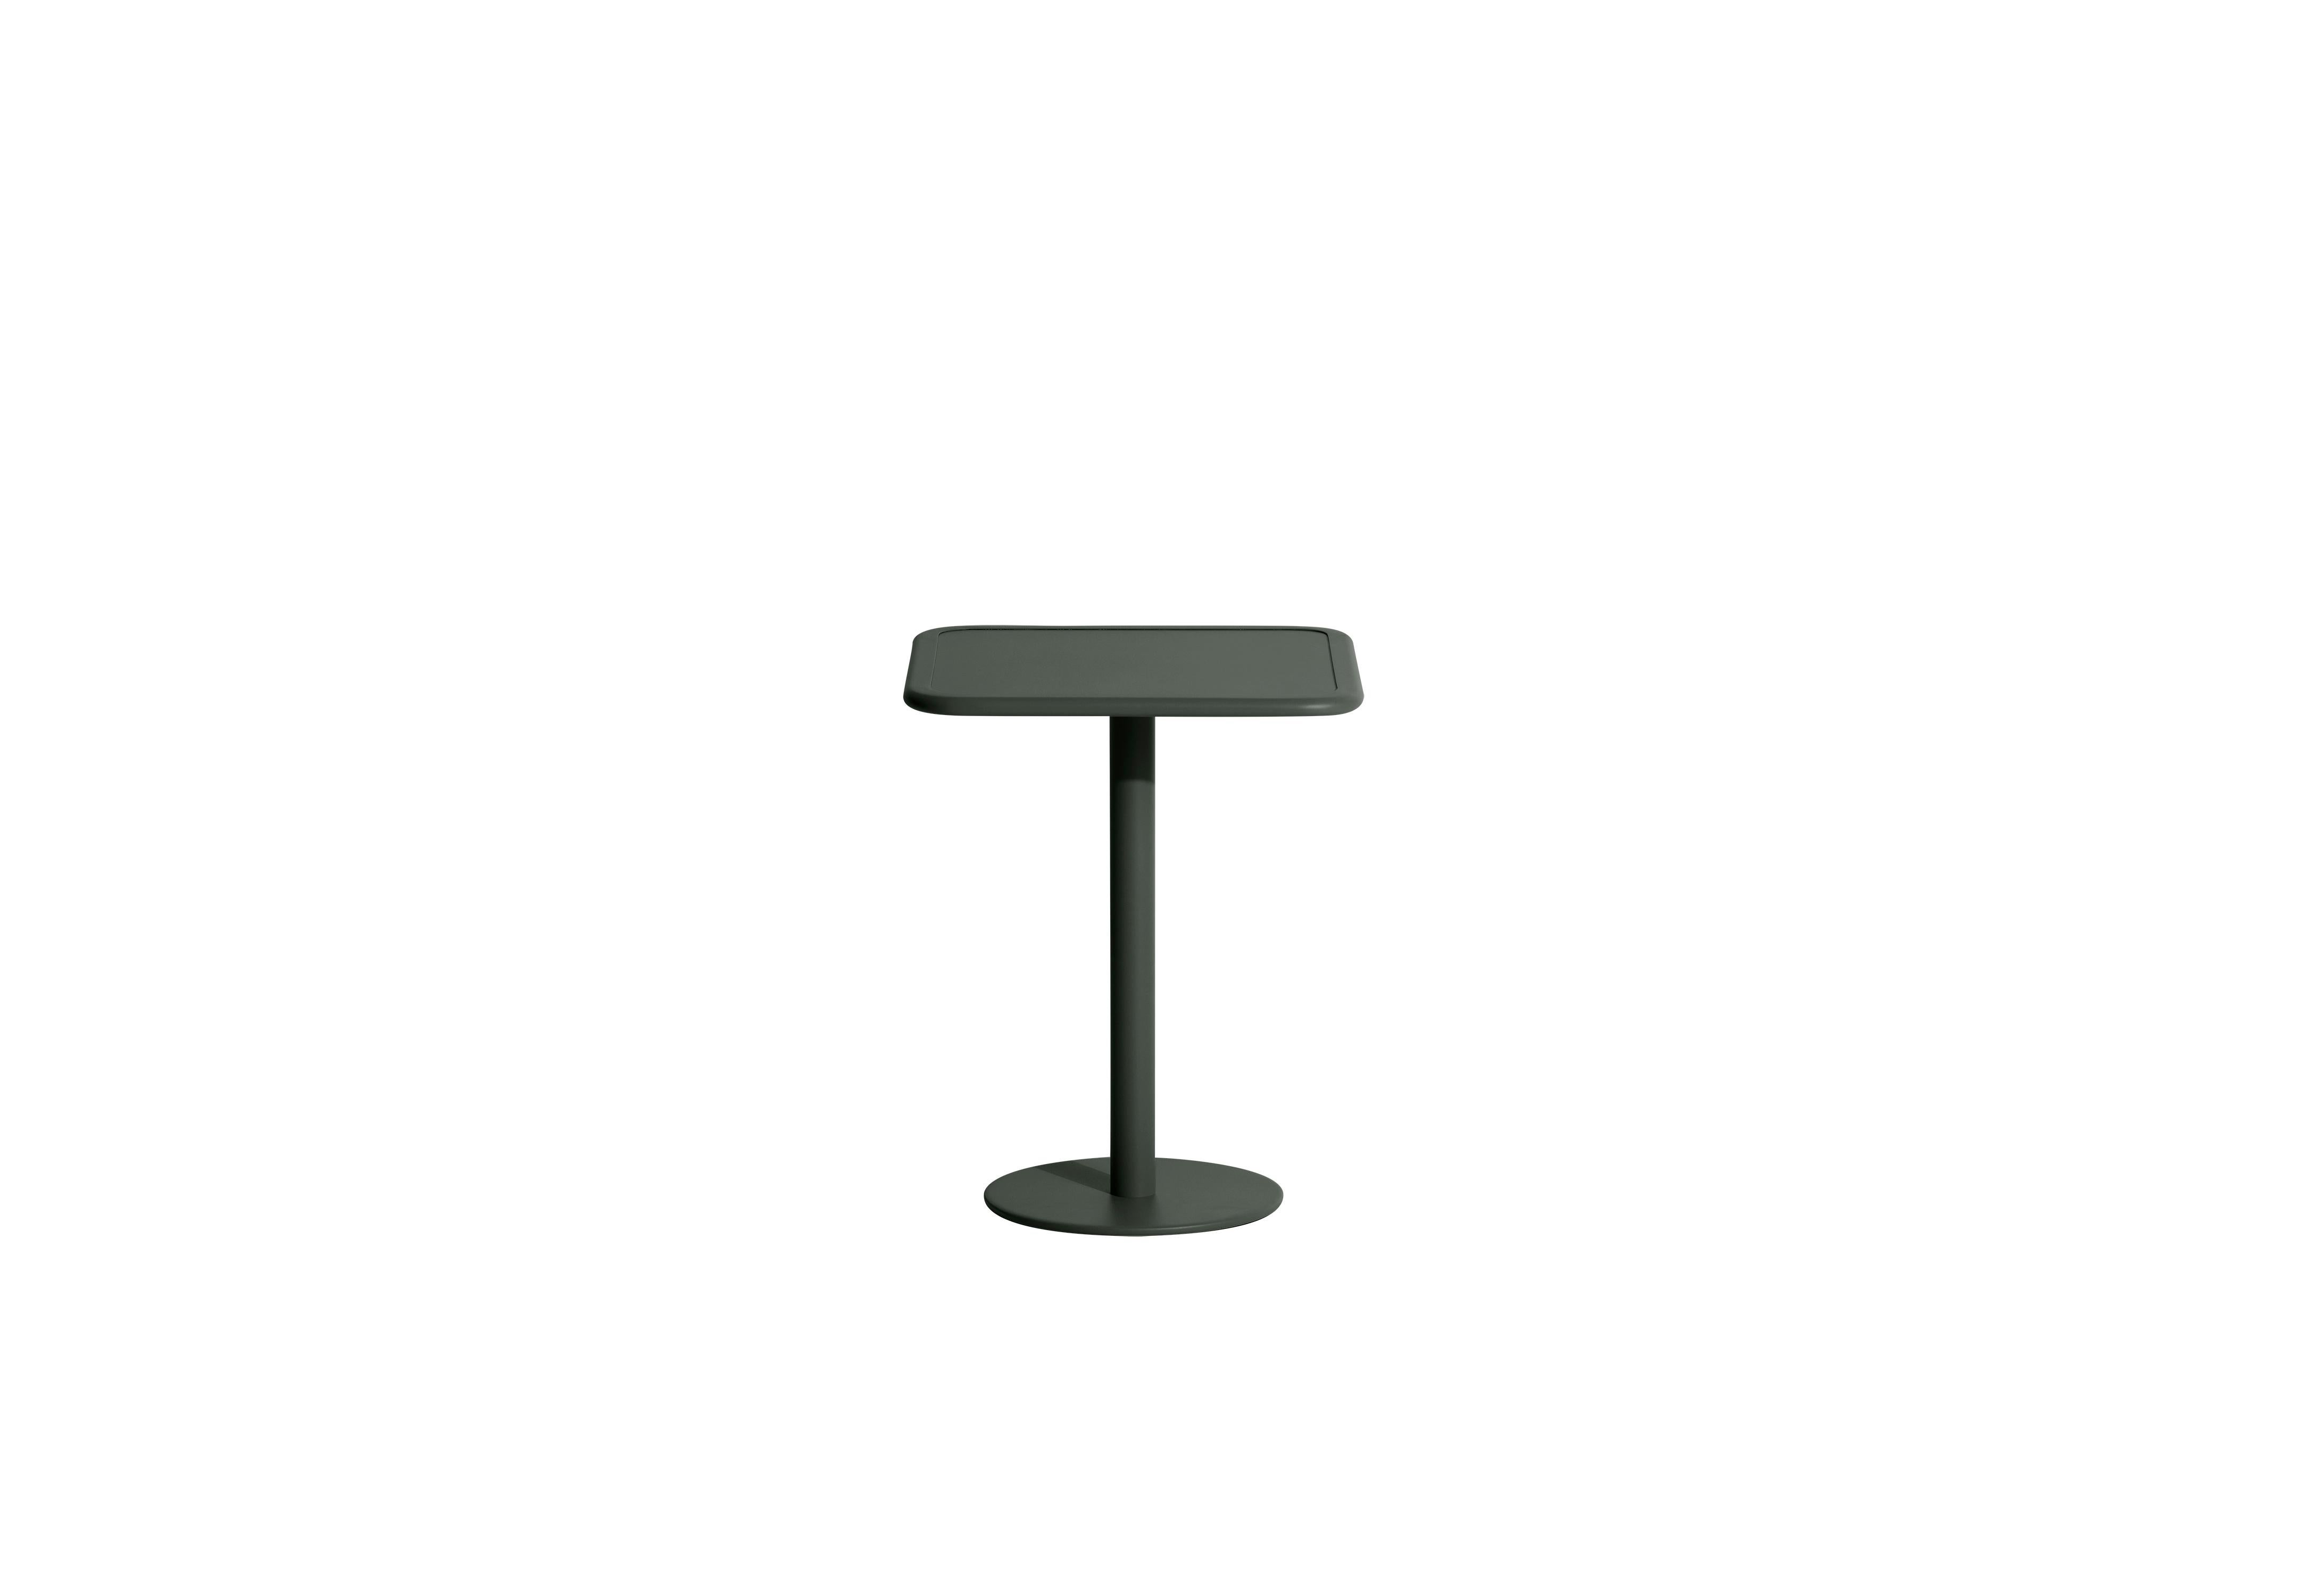 Petite Friture Week-End Bistro Square Dining Table in Glass Green Aluminium by Studio BrichetZiegler, 2017

La collection week-end est une gamme complète de mobilier d'extérieur, en peinture époxy aluminium grainé, finition mate, qui comprend 18